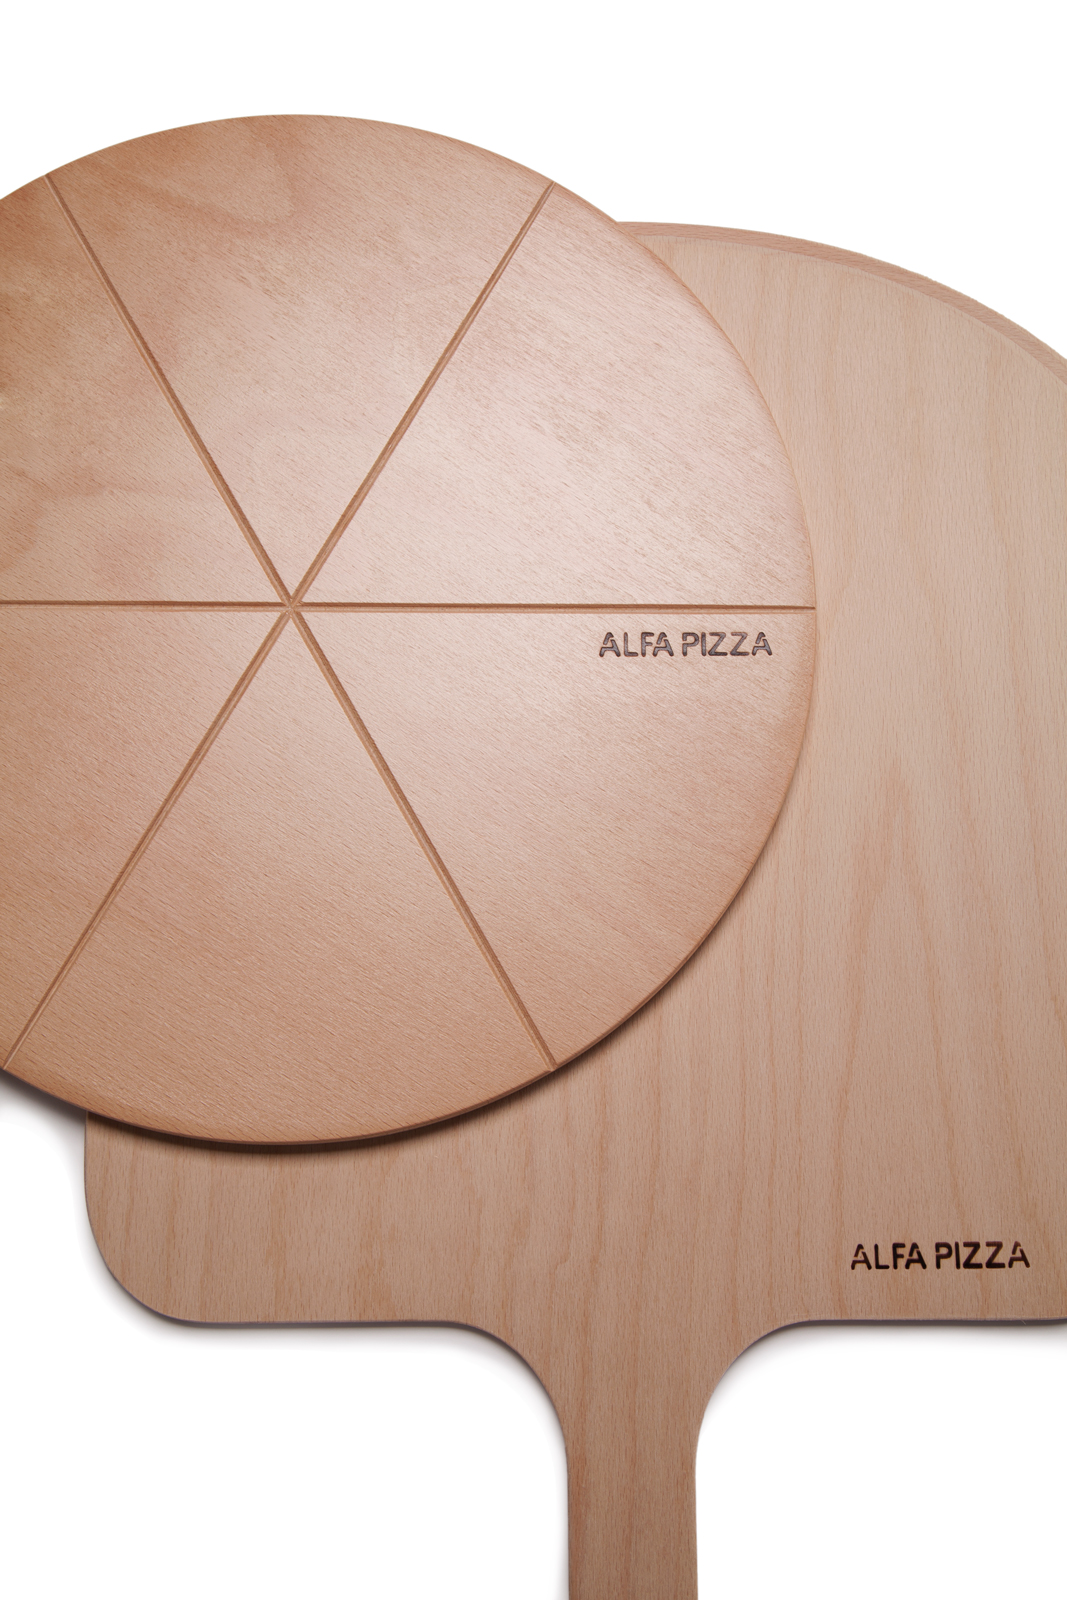 paletta-legno-pizza-composizione.jpg